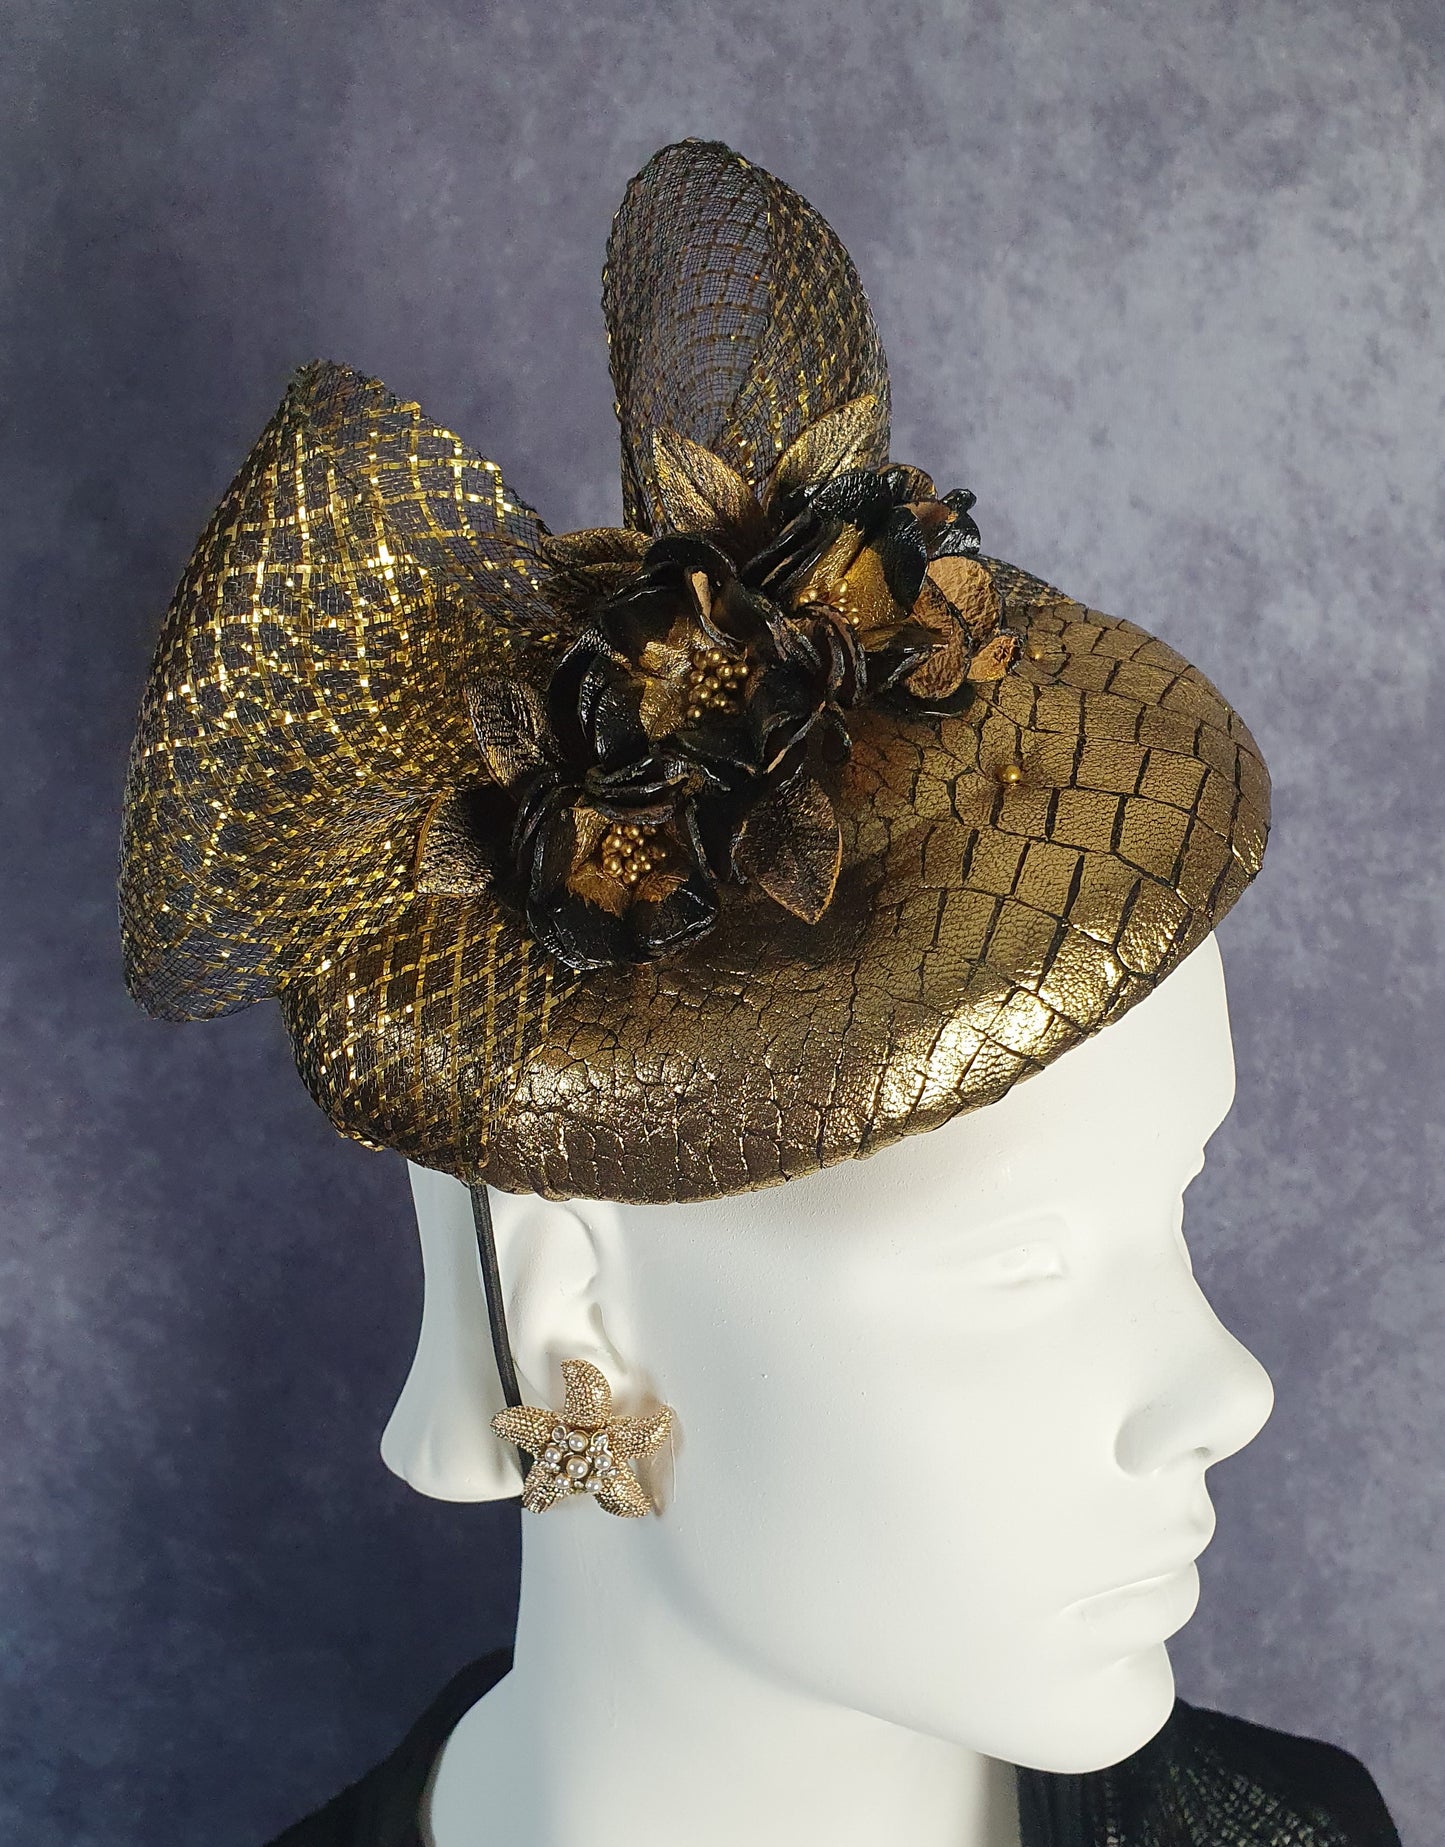 Fascinator handgemaakt in goud leer met zwart, bruiloft hoofdtooi, elegante dameshoed voor een speciale gelegenheid